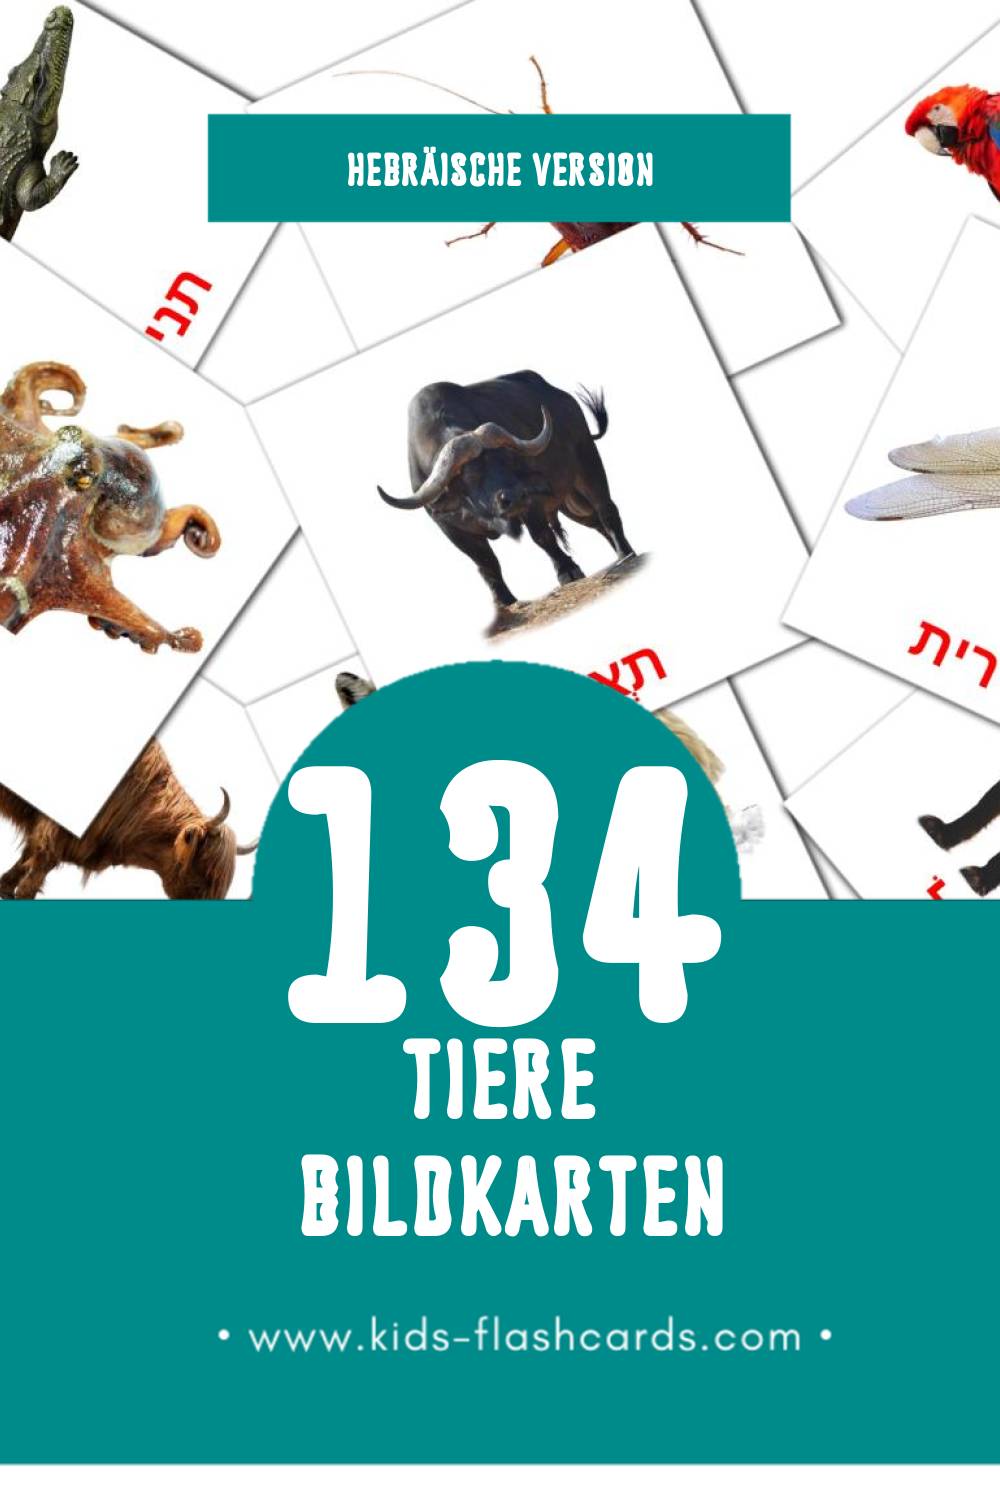 Visual חיות Flashcards für Kleinkinder (134 Karten in Hebräisch)